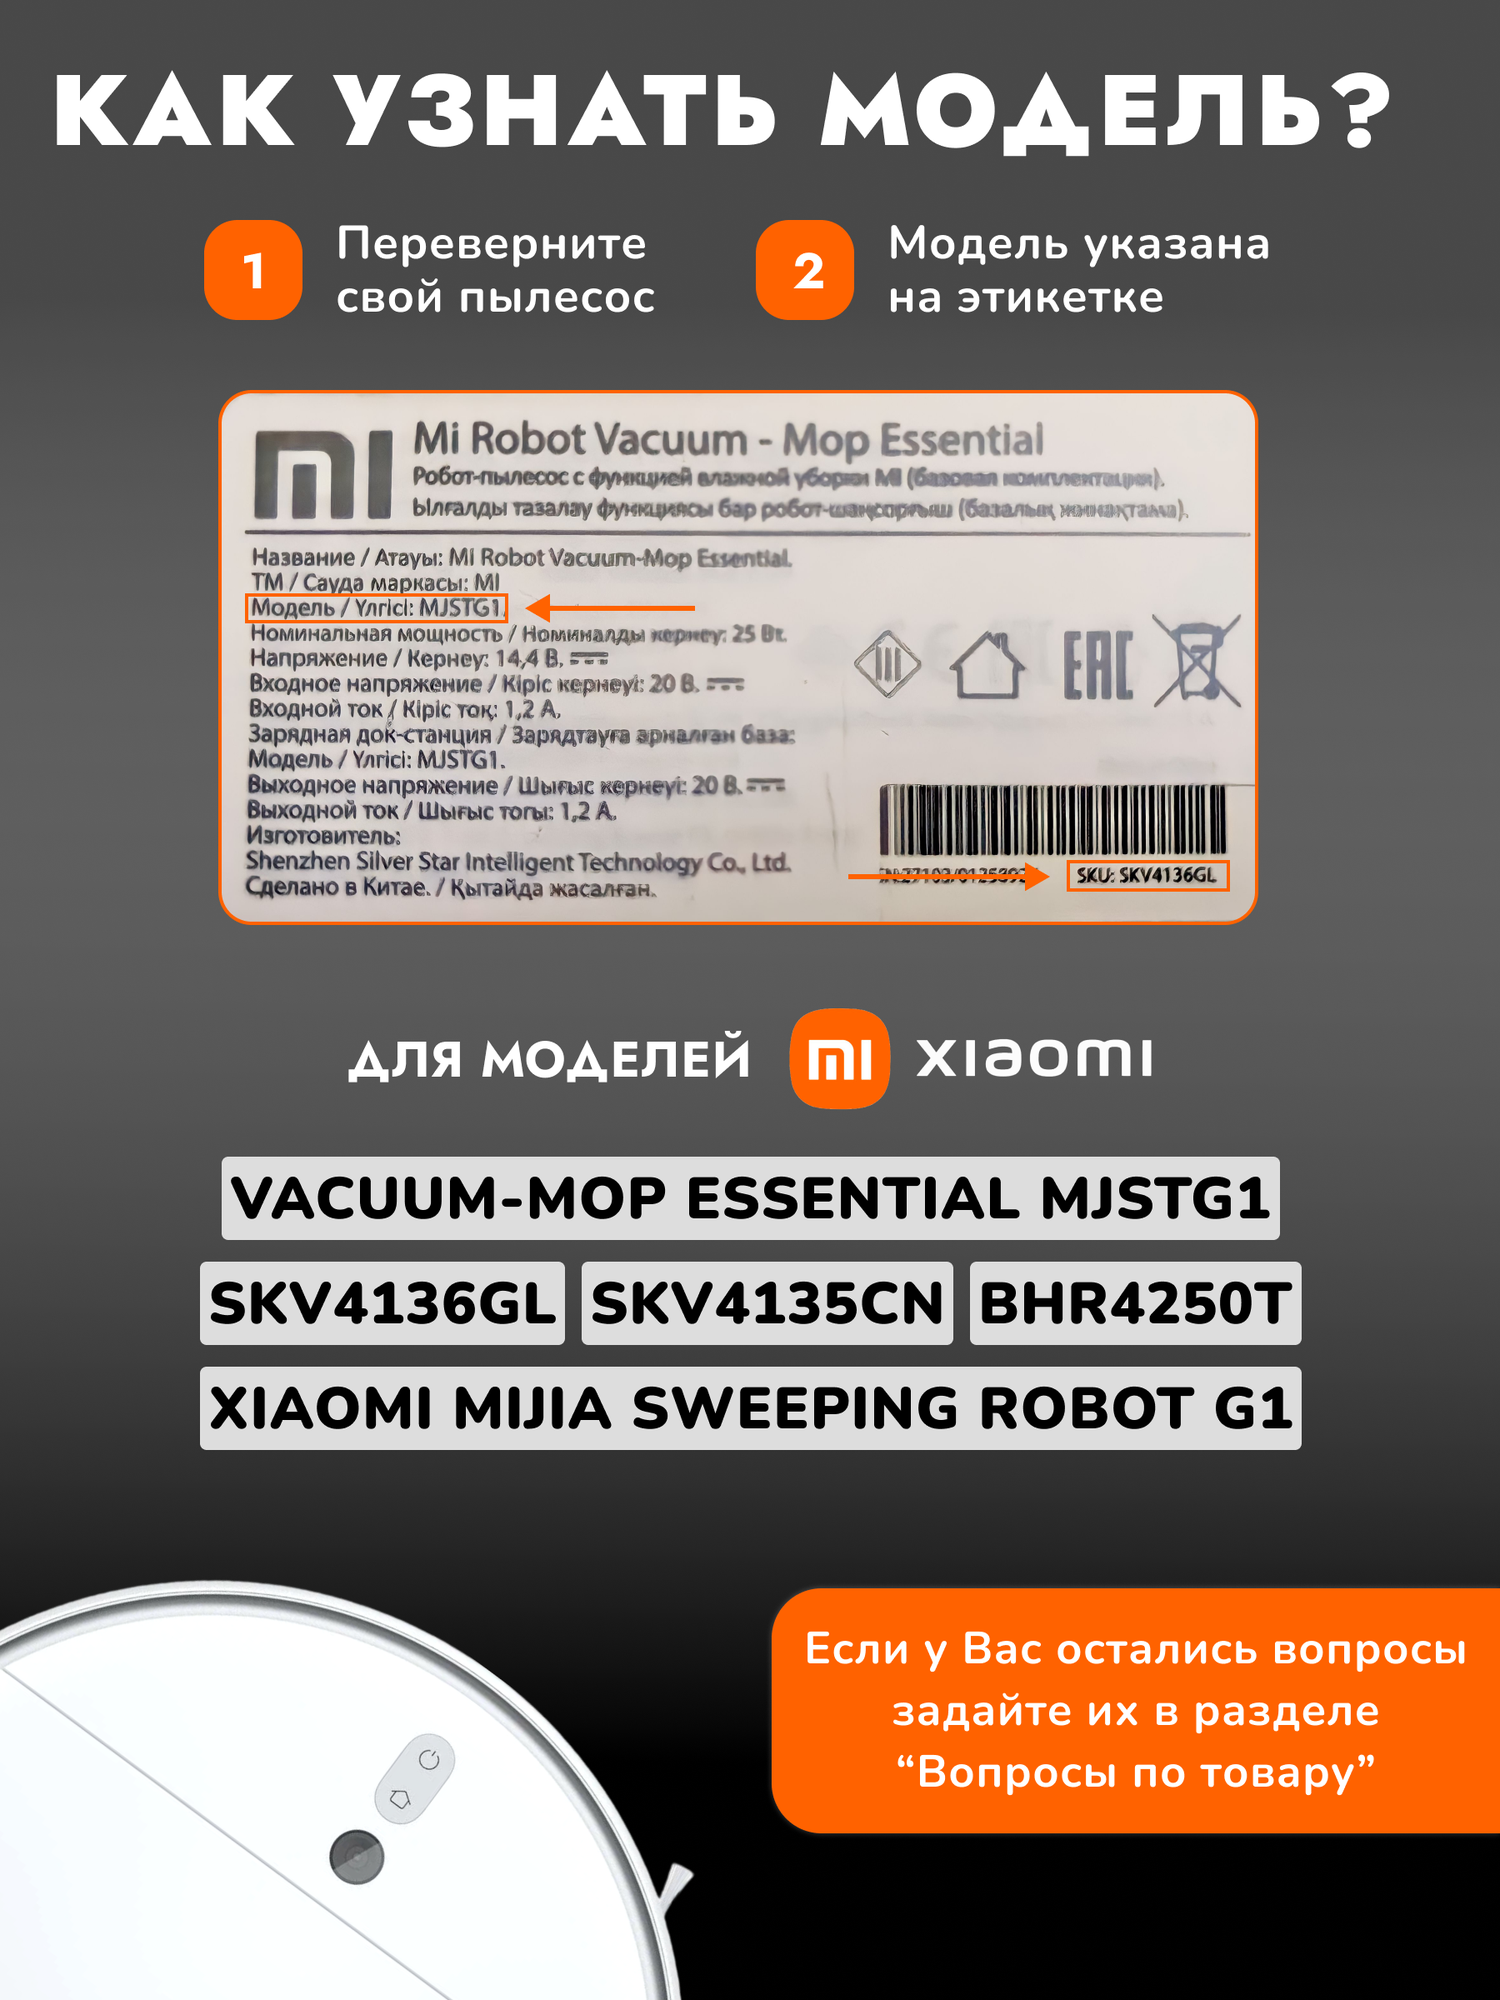 Набор фильтров и аксессуаров для робота пылесоса Xiaomi Vacuum Mop Essential, MJSTG1, SKV4136GL, BHR4250TY, SKV4135CN - 6 предметов в наборе